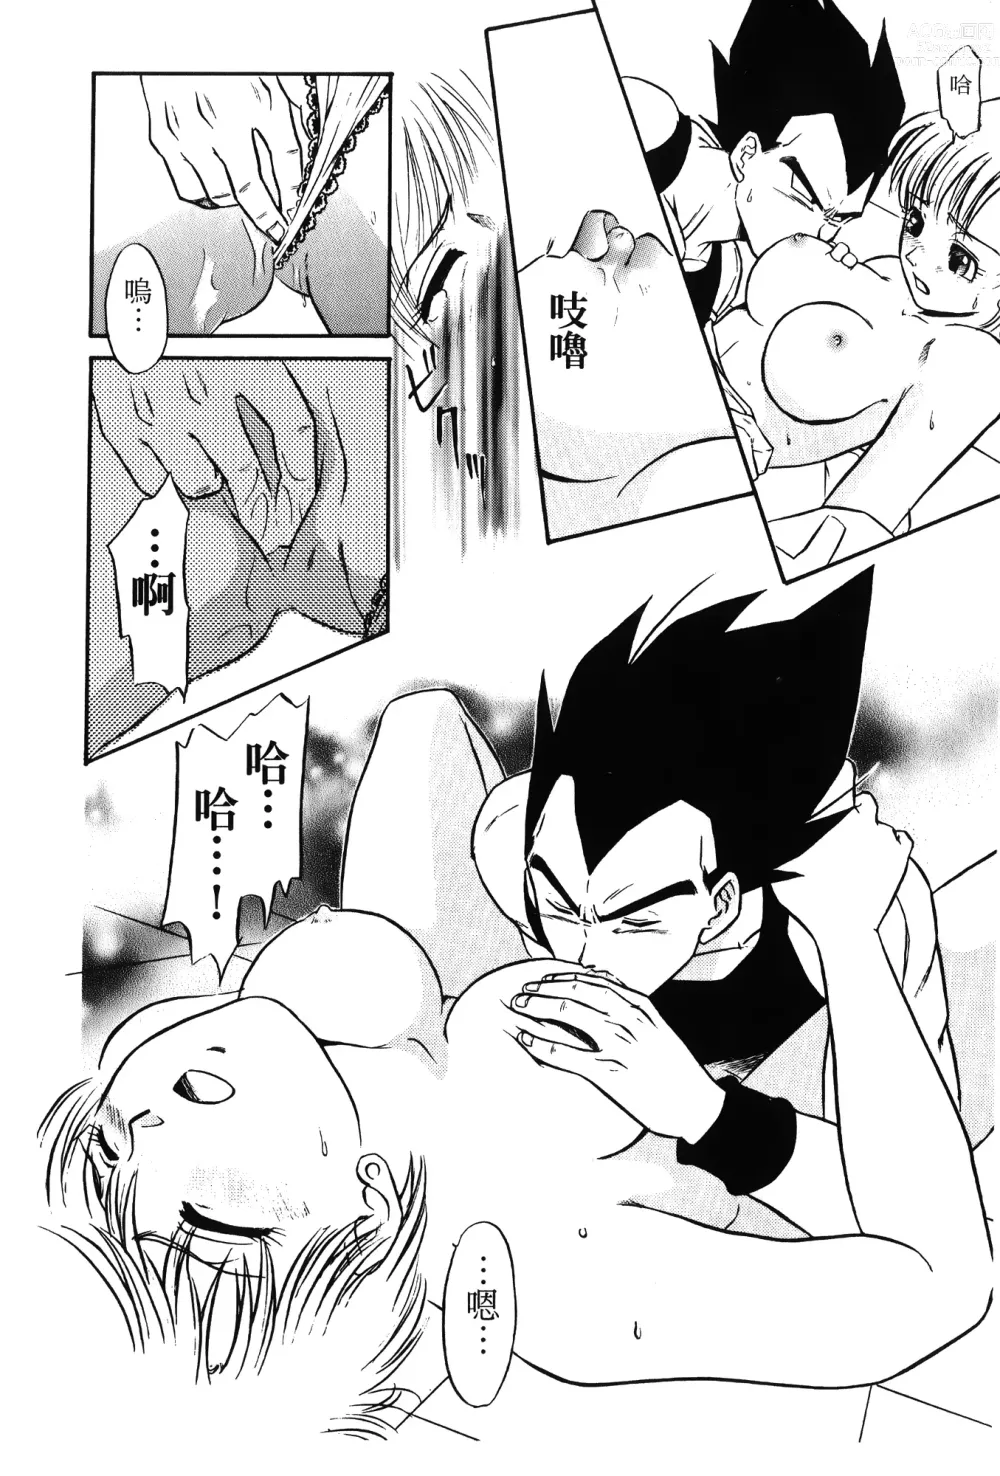 Page 9 of doujinshi ドラゴンパール 01